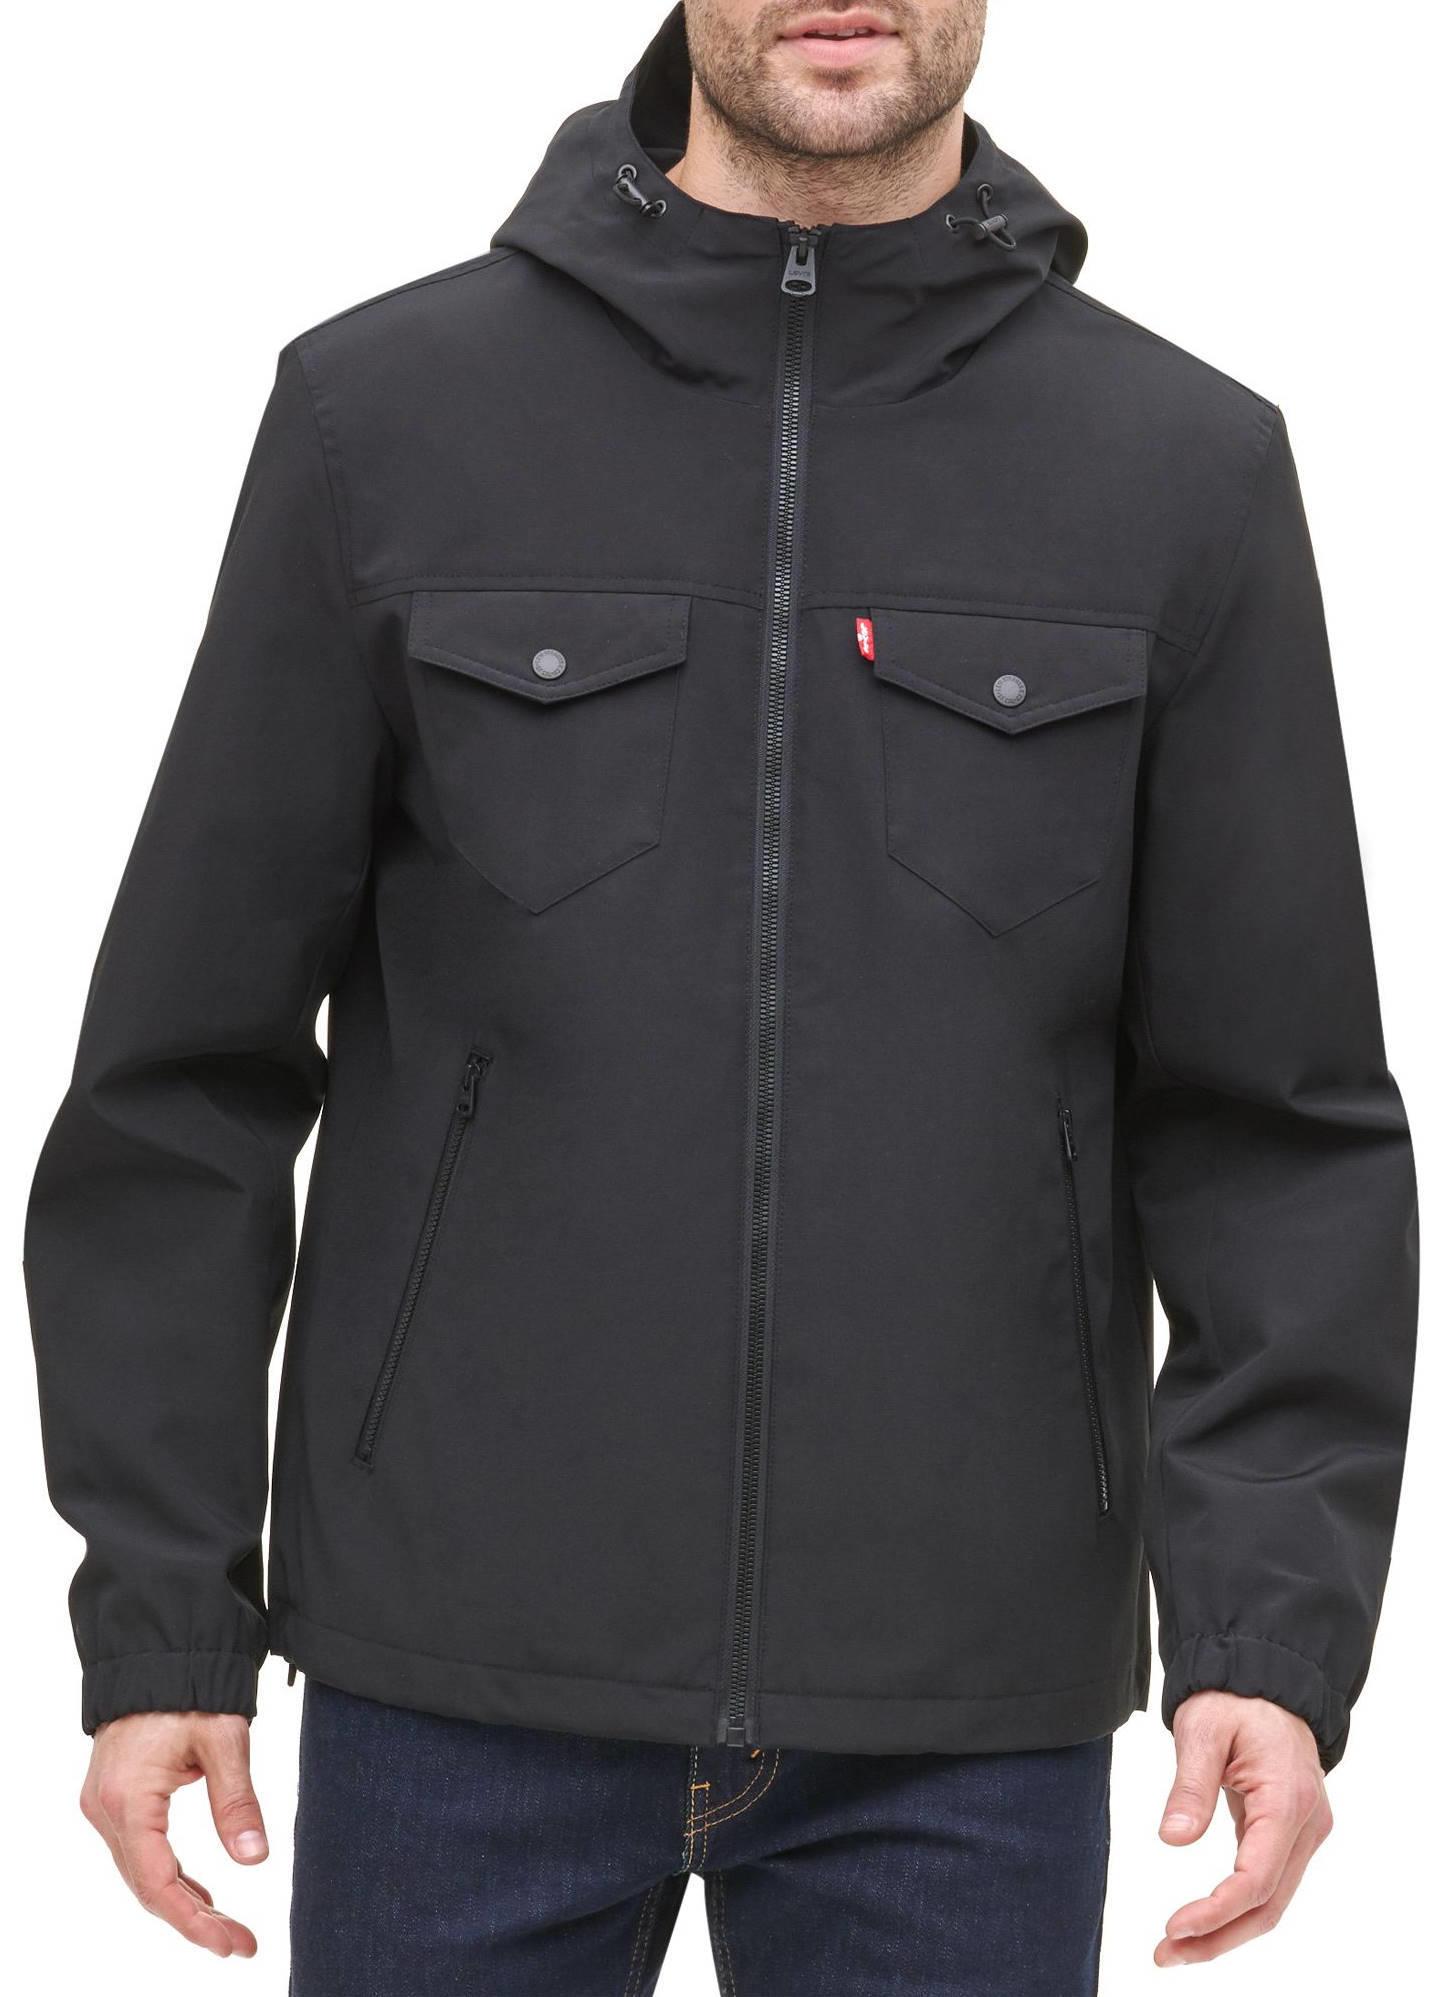  Levi's Arctic Cloth Jacket - Black (Small)